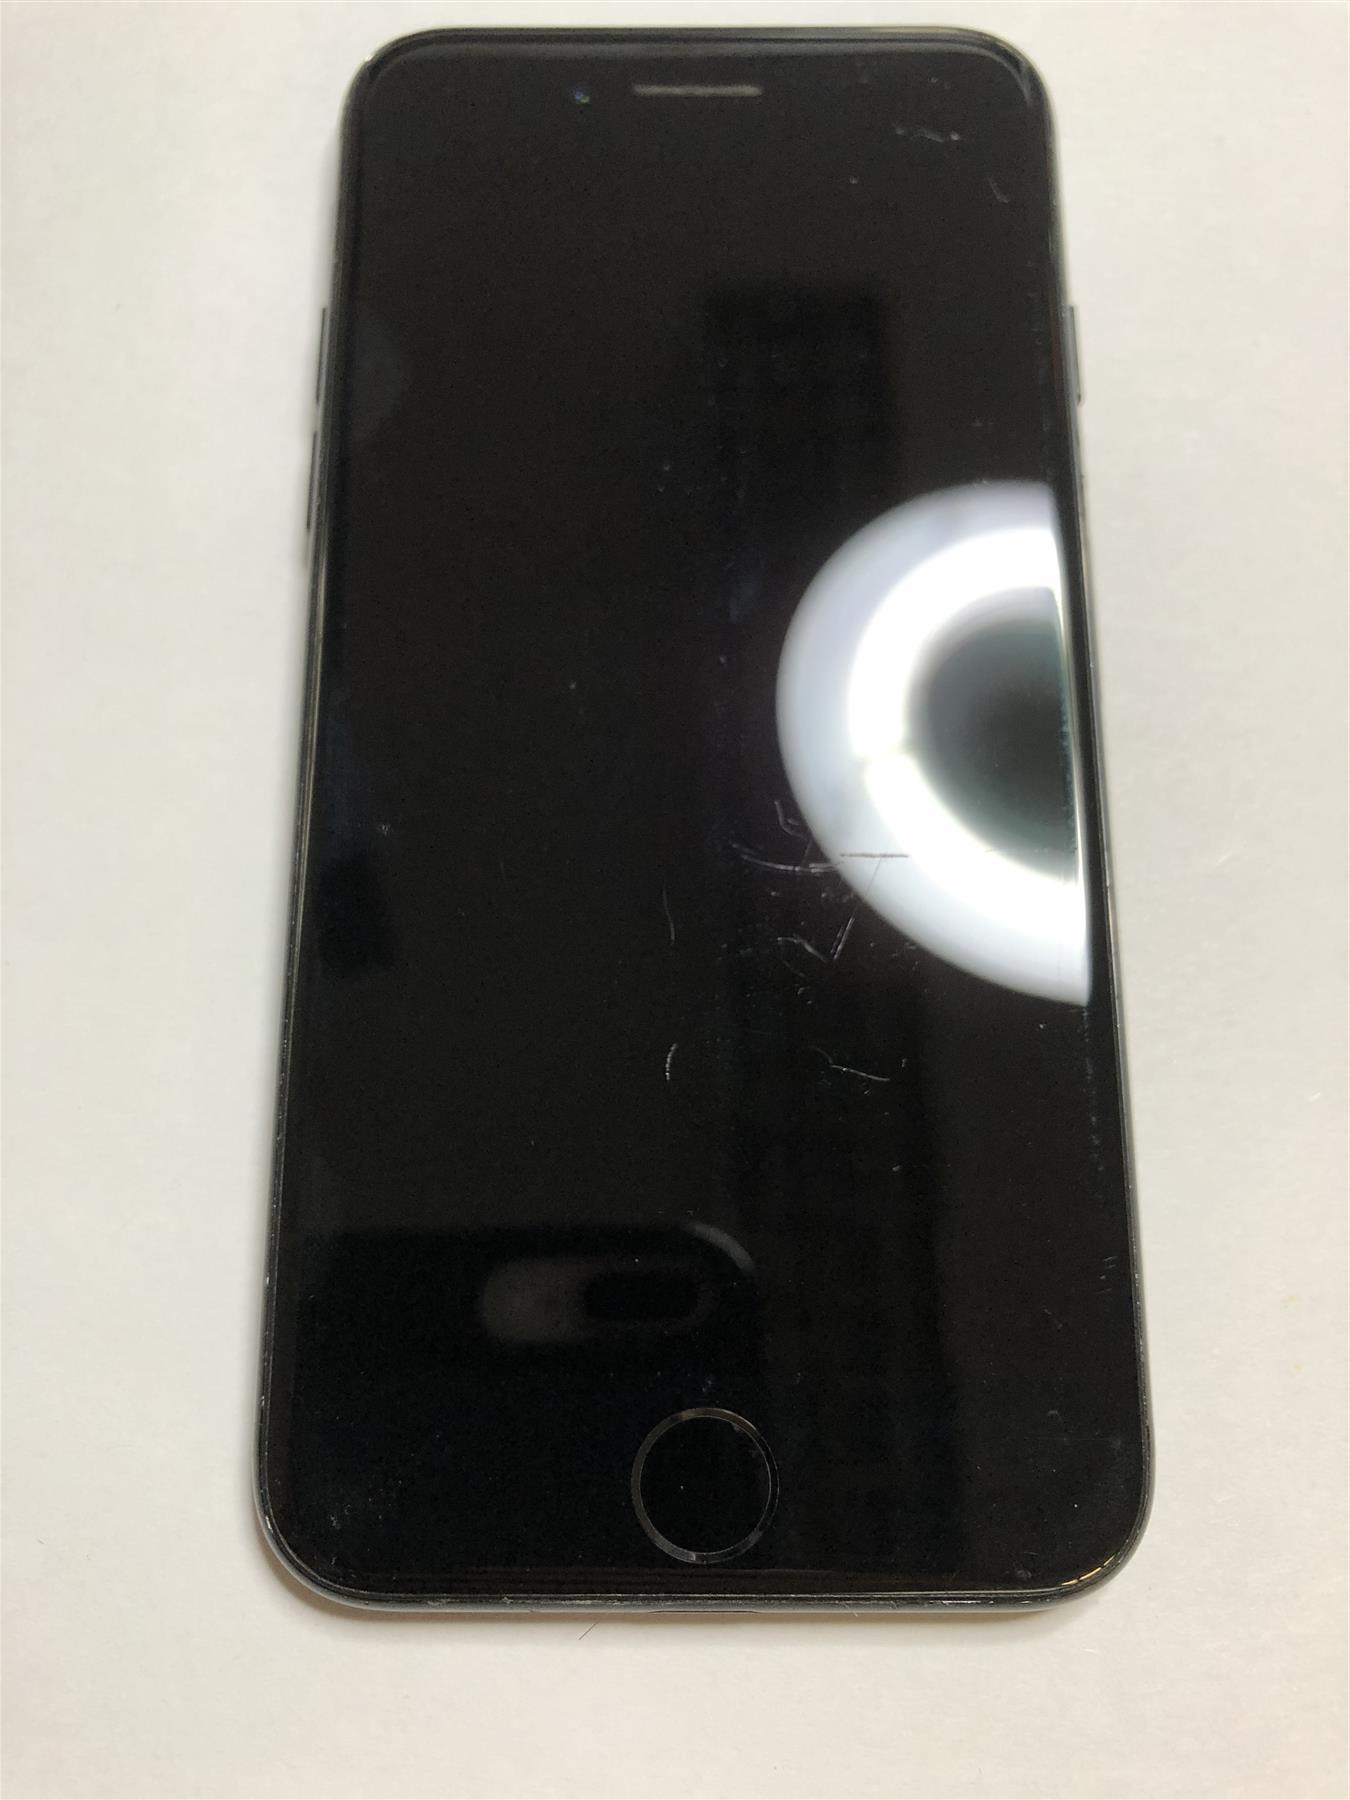 Apple iPhone 7 128GB Jet Black Unlocked - Used